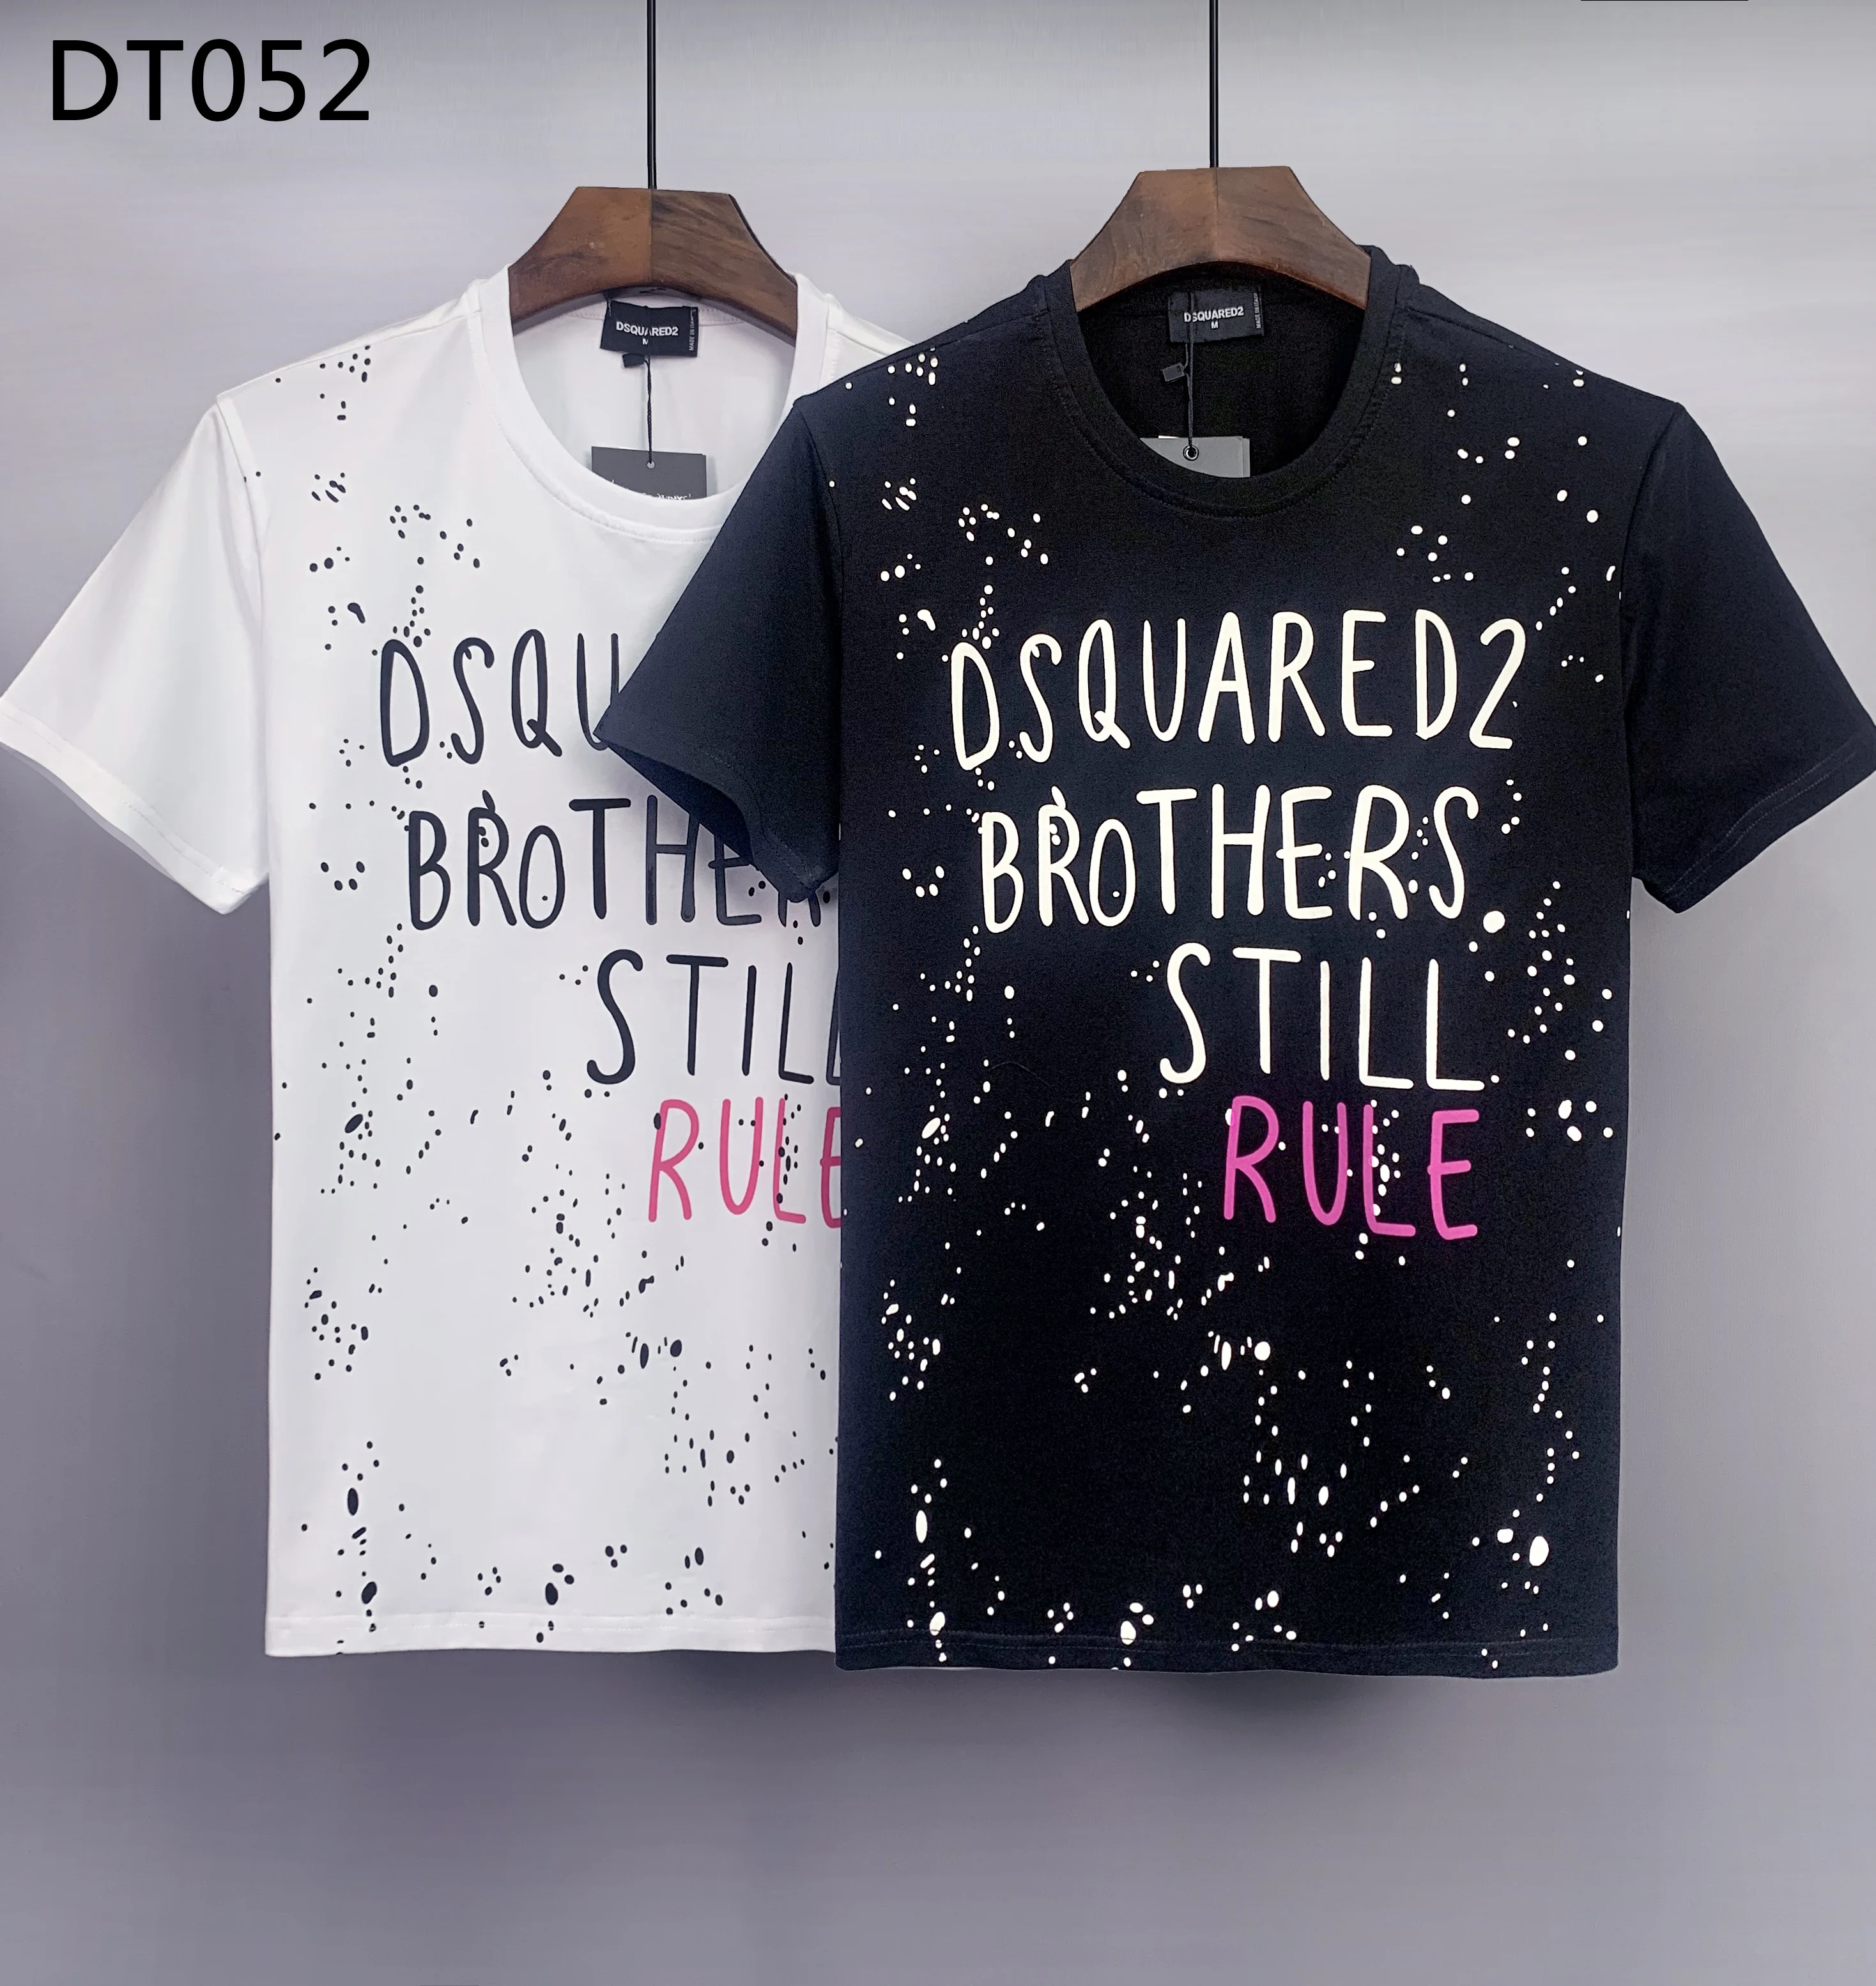 

Женская/мужская футболка с принтом букв и граффити DSQ D2, новинка 2022, стильные хлопковые летние футболки, модель DT052 #